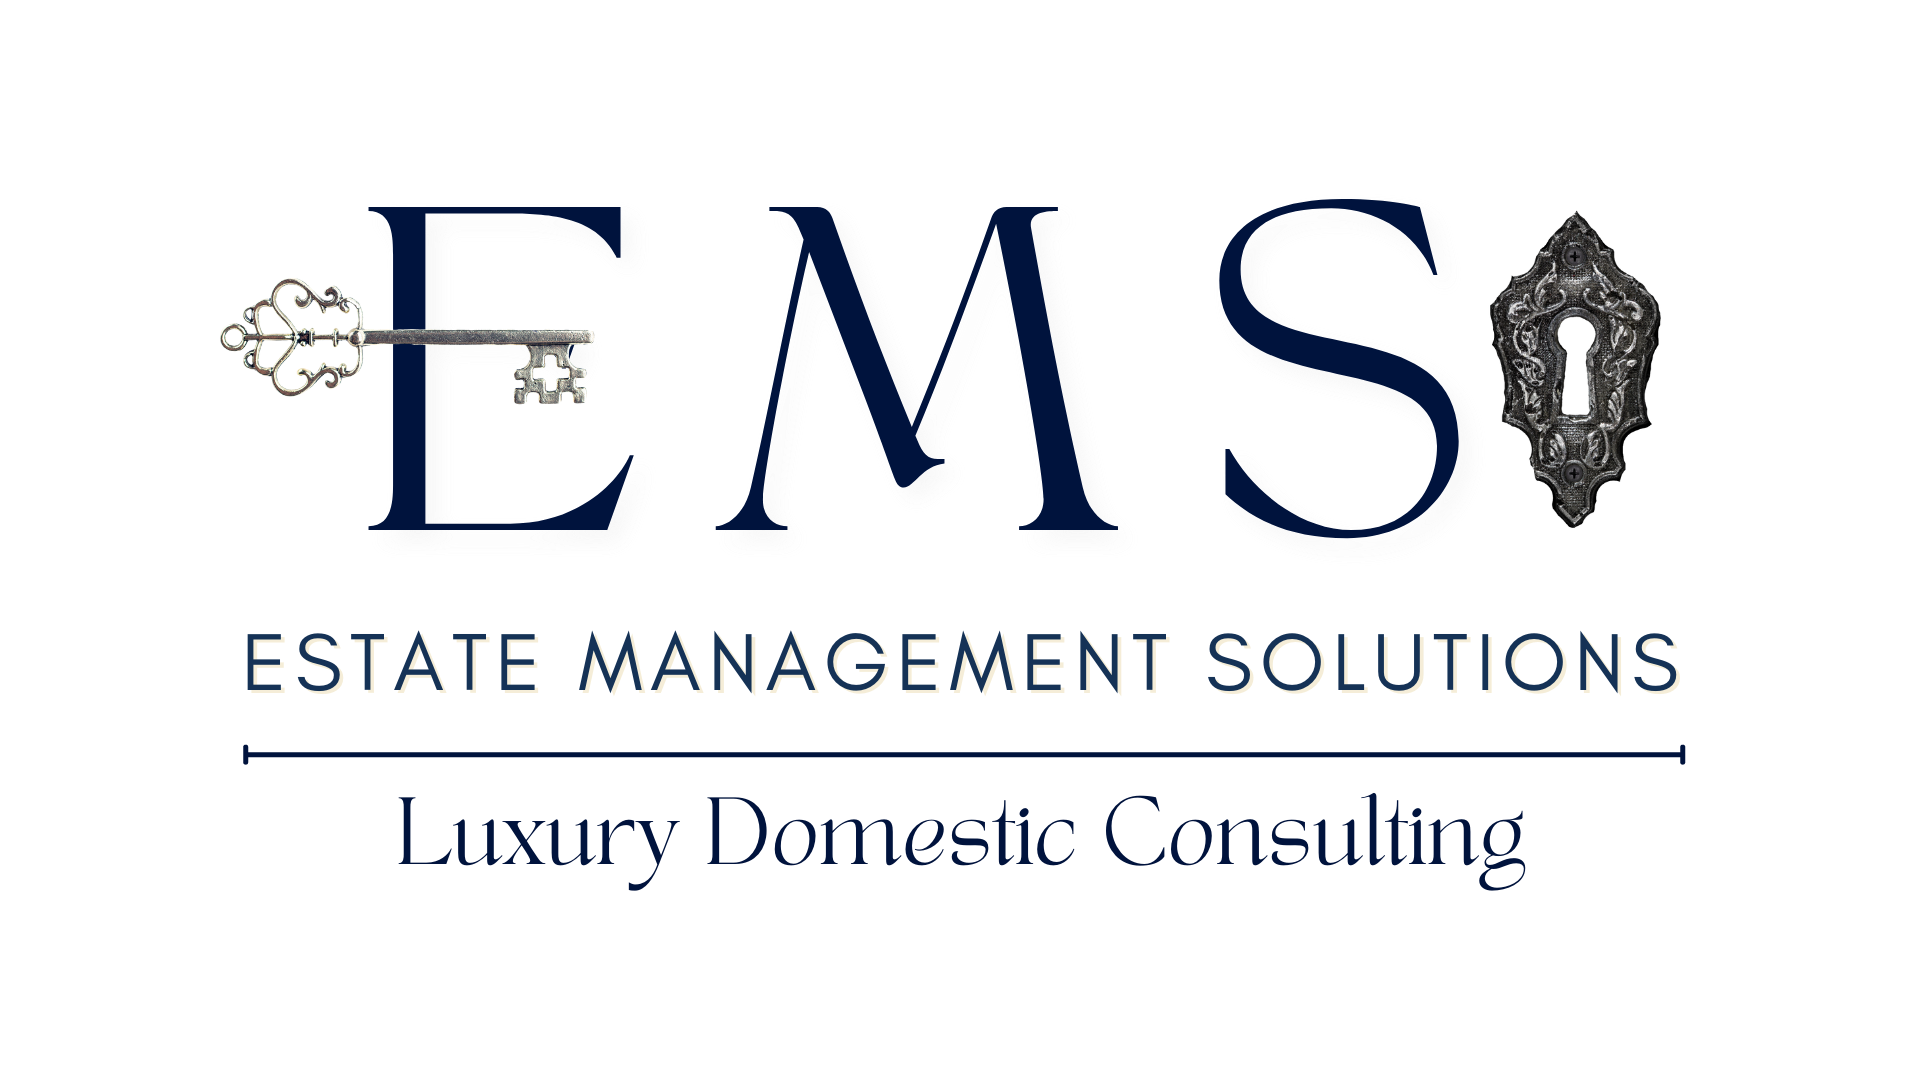 Estate Management Solutions clients!